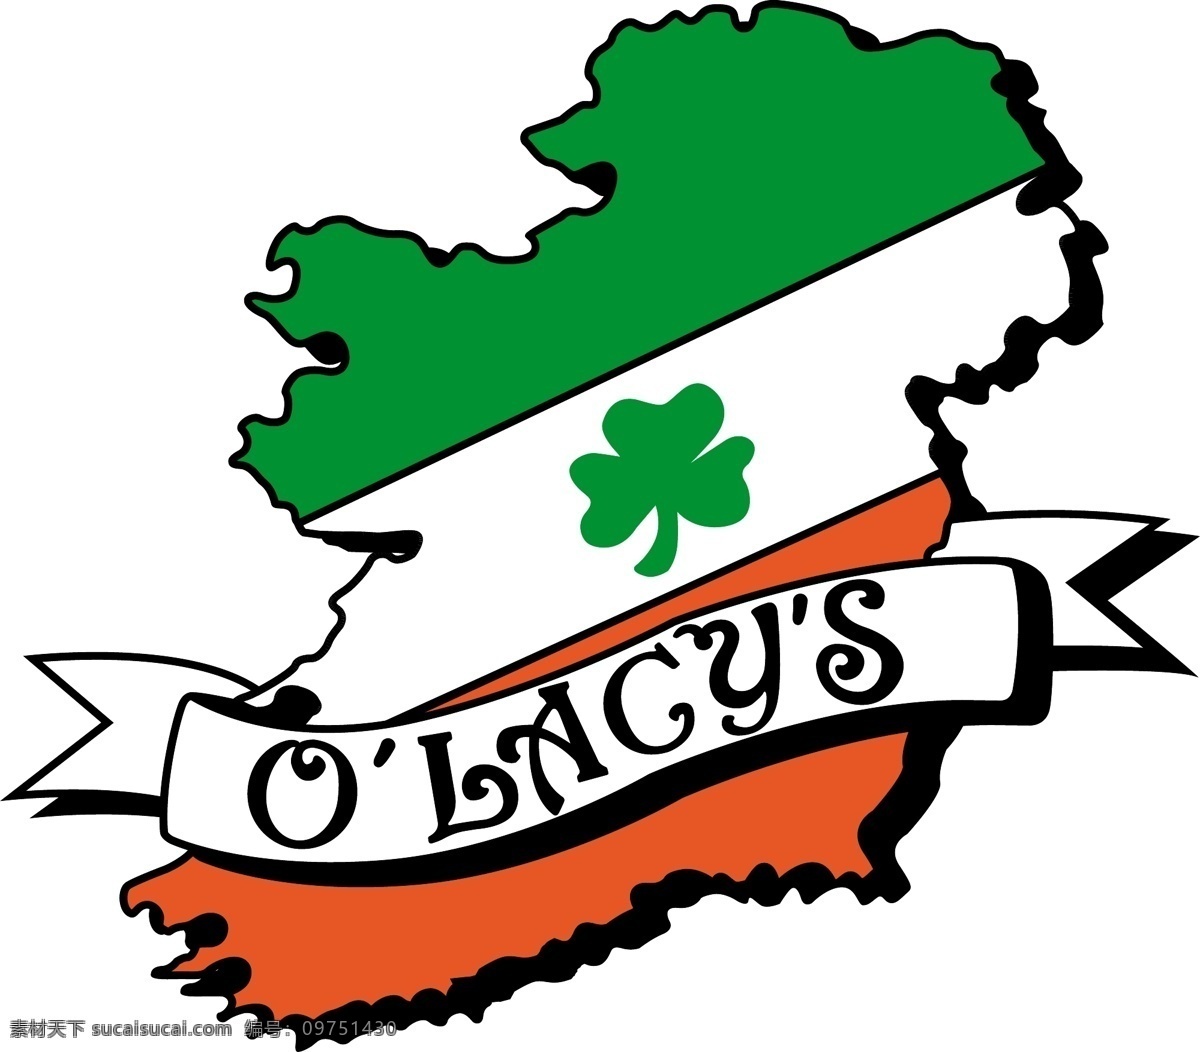 olacy 爱尔兰 酒吧 标识 公司 免费 品牌 品牌标识 商标 矢量标志下载 免费矢量标识 矢量 psd源文件 logo设计